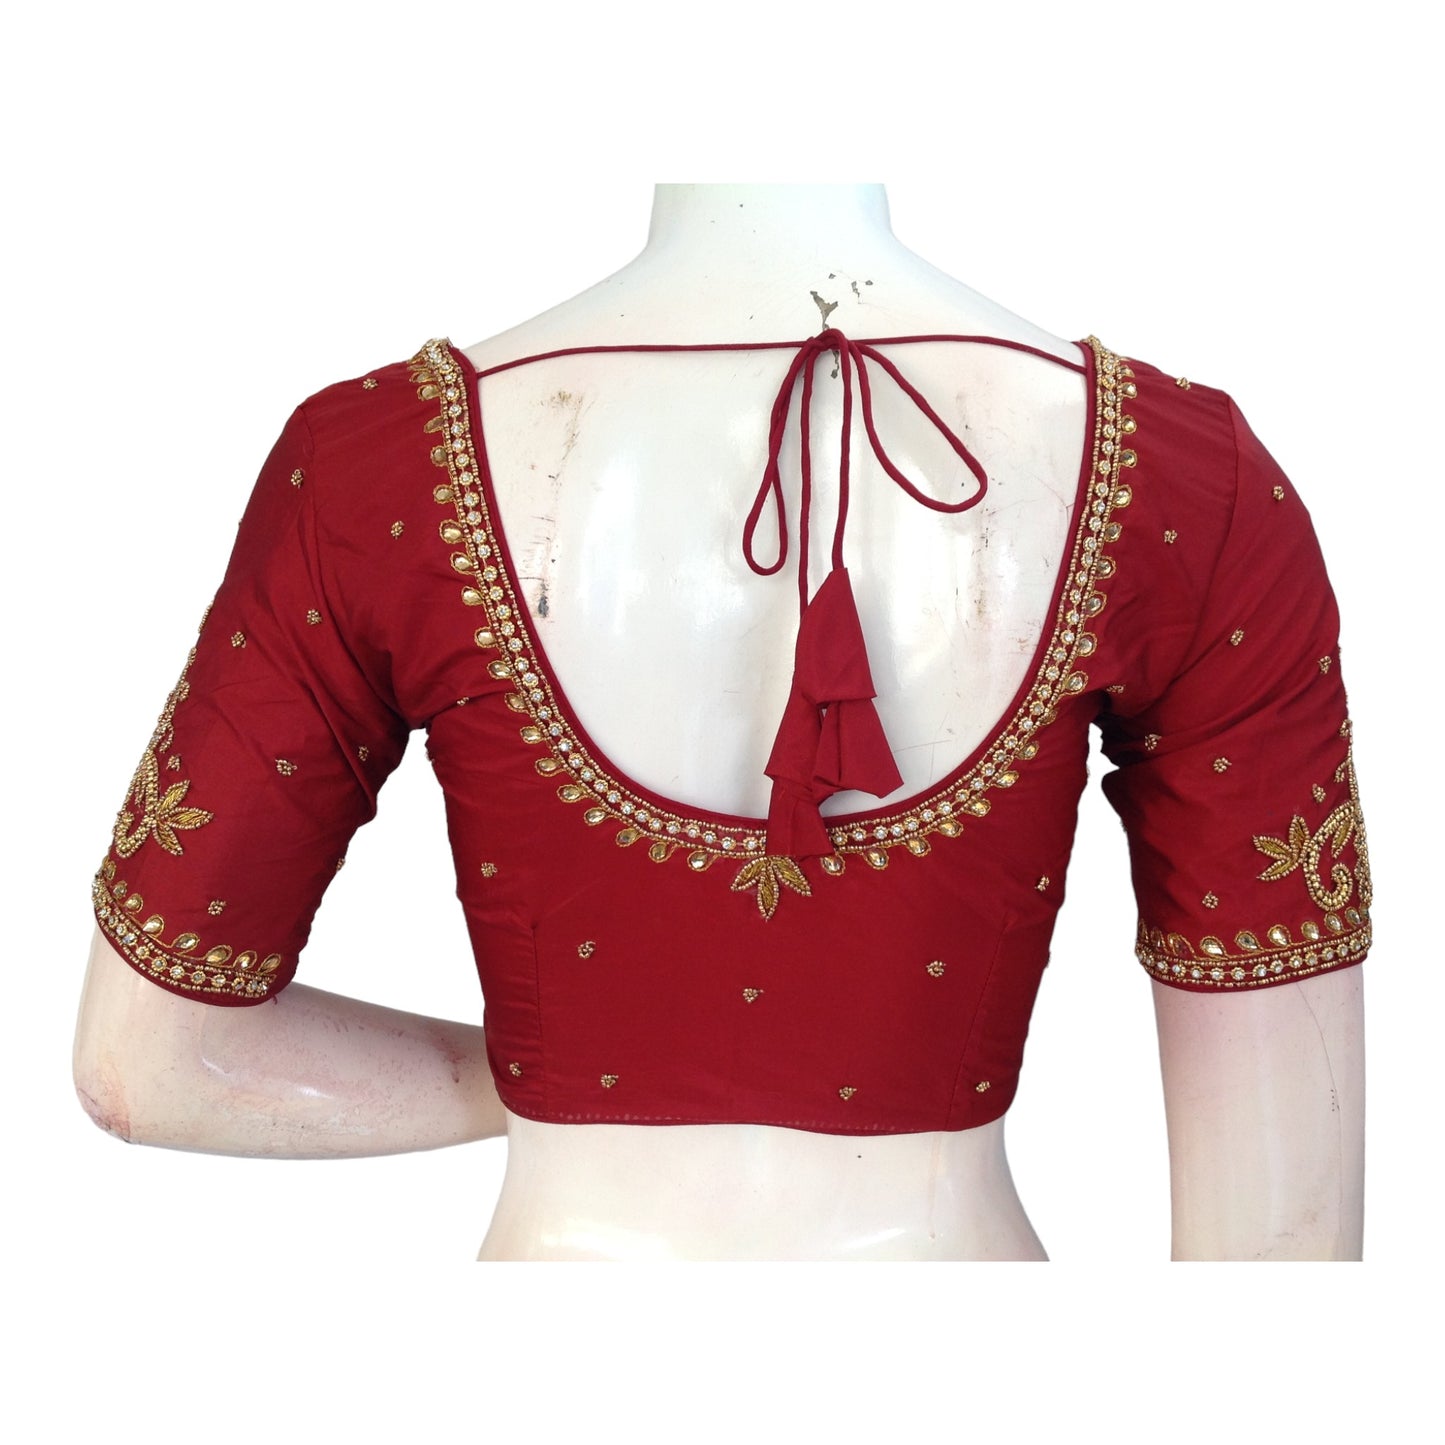  Regal Maroon Aari Work Silk Blouse for Weddings | Handcrafted Indian Elegance